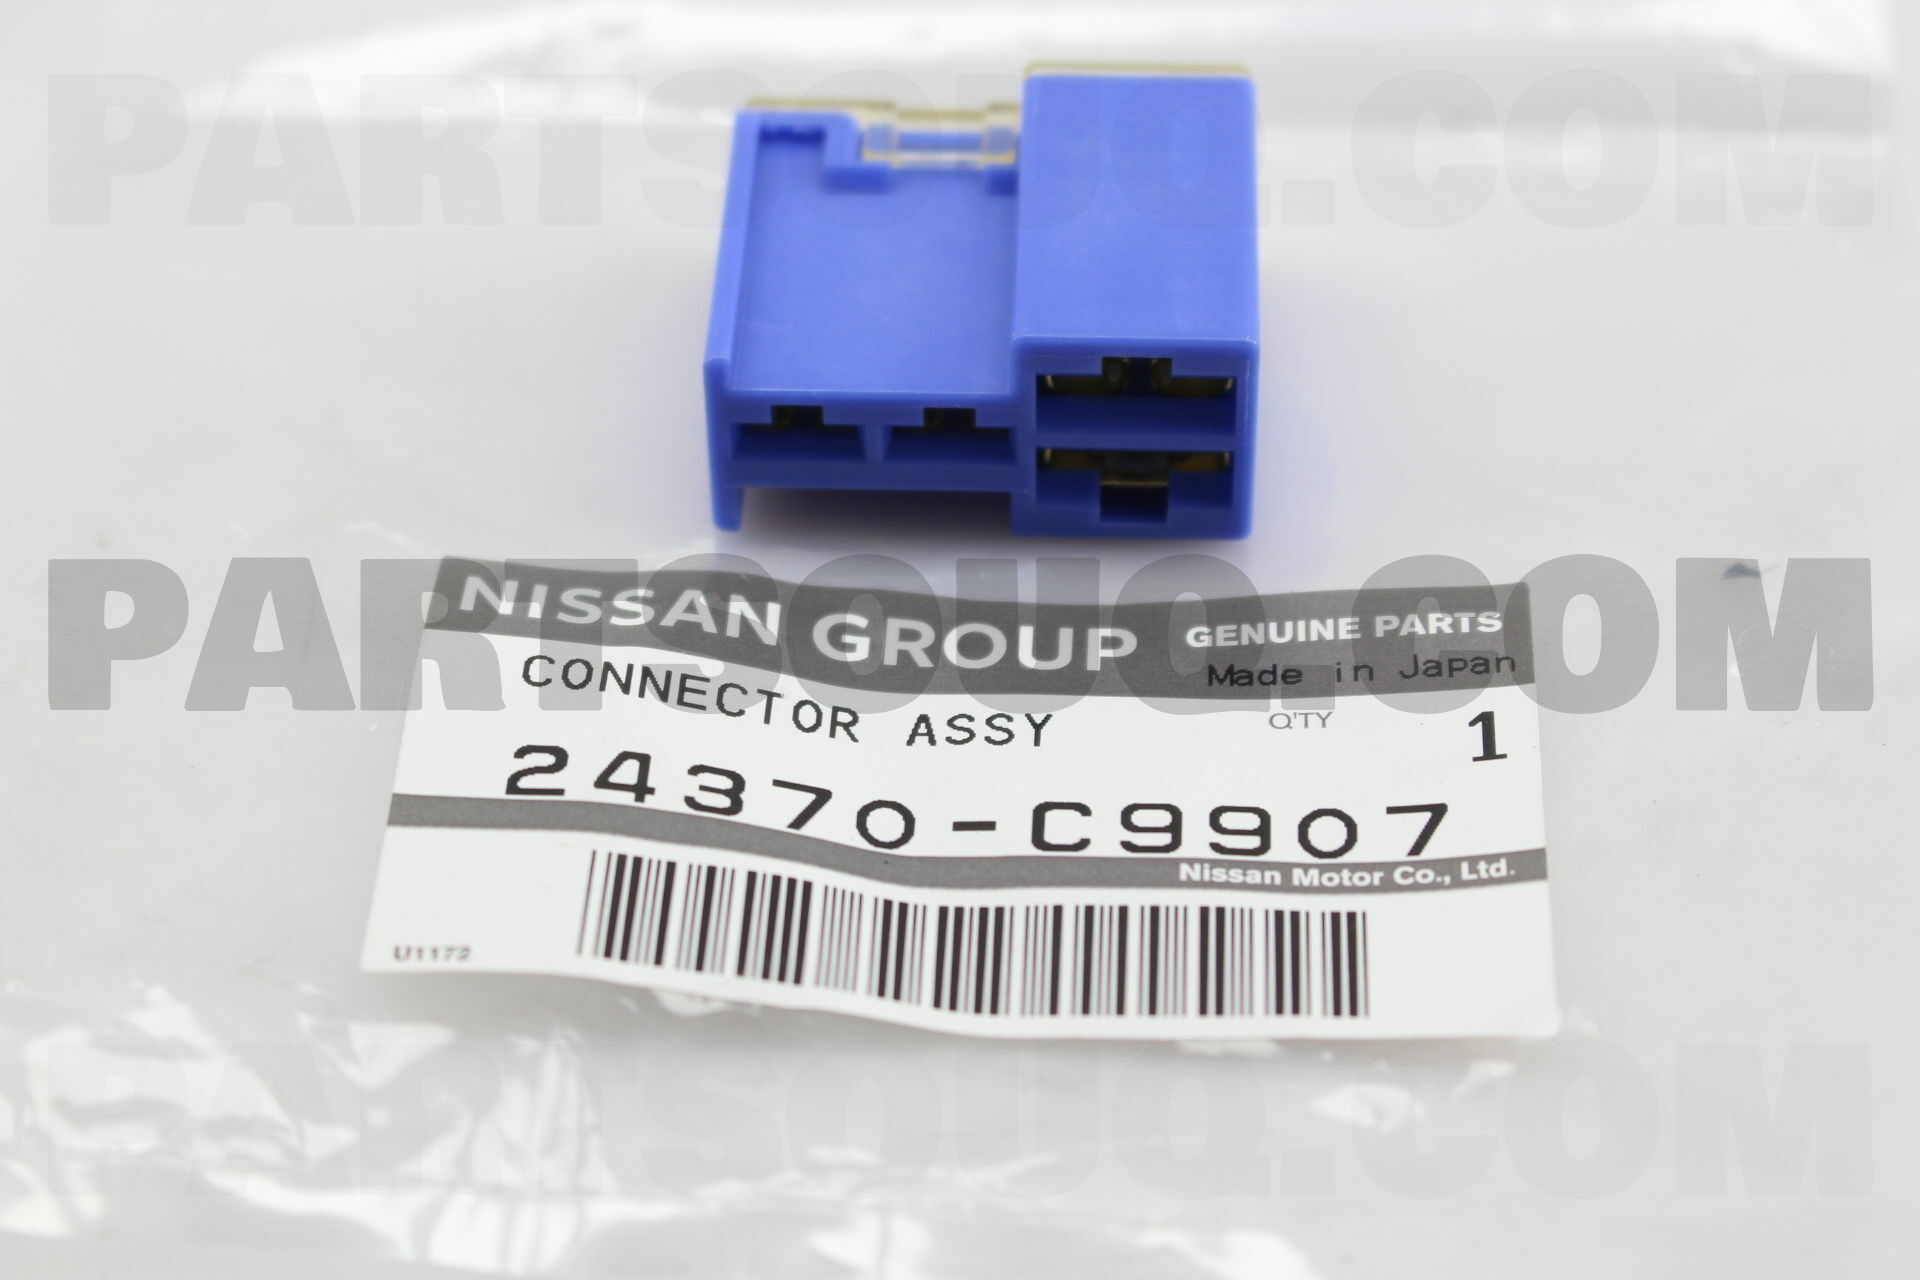 CONNECTOR ASSY-FUSIBLE LINK 24370C9907 | Nissan Parts | PartSouq